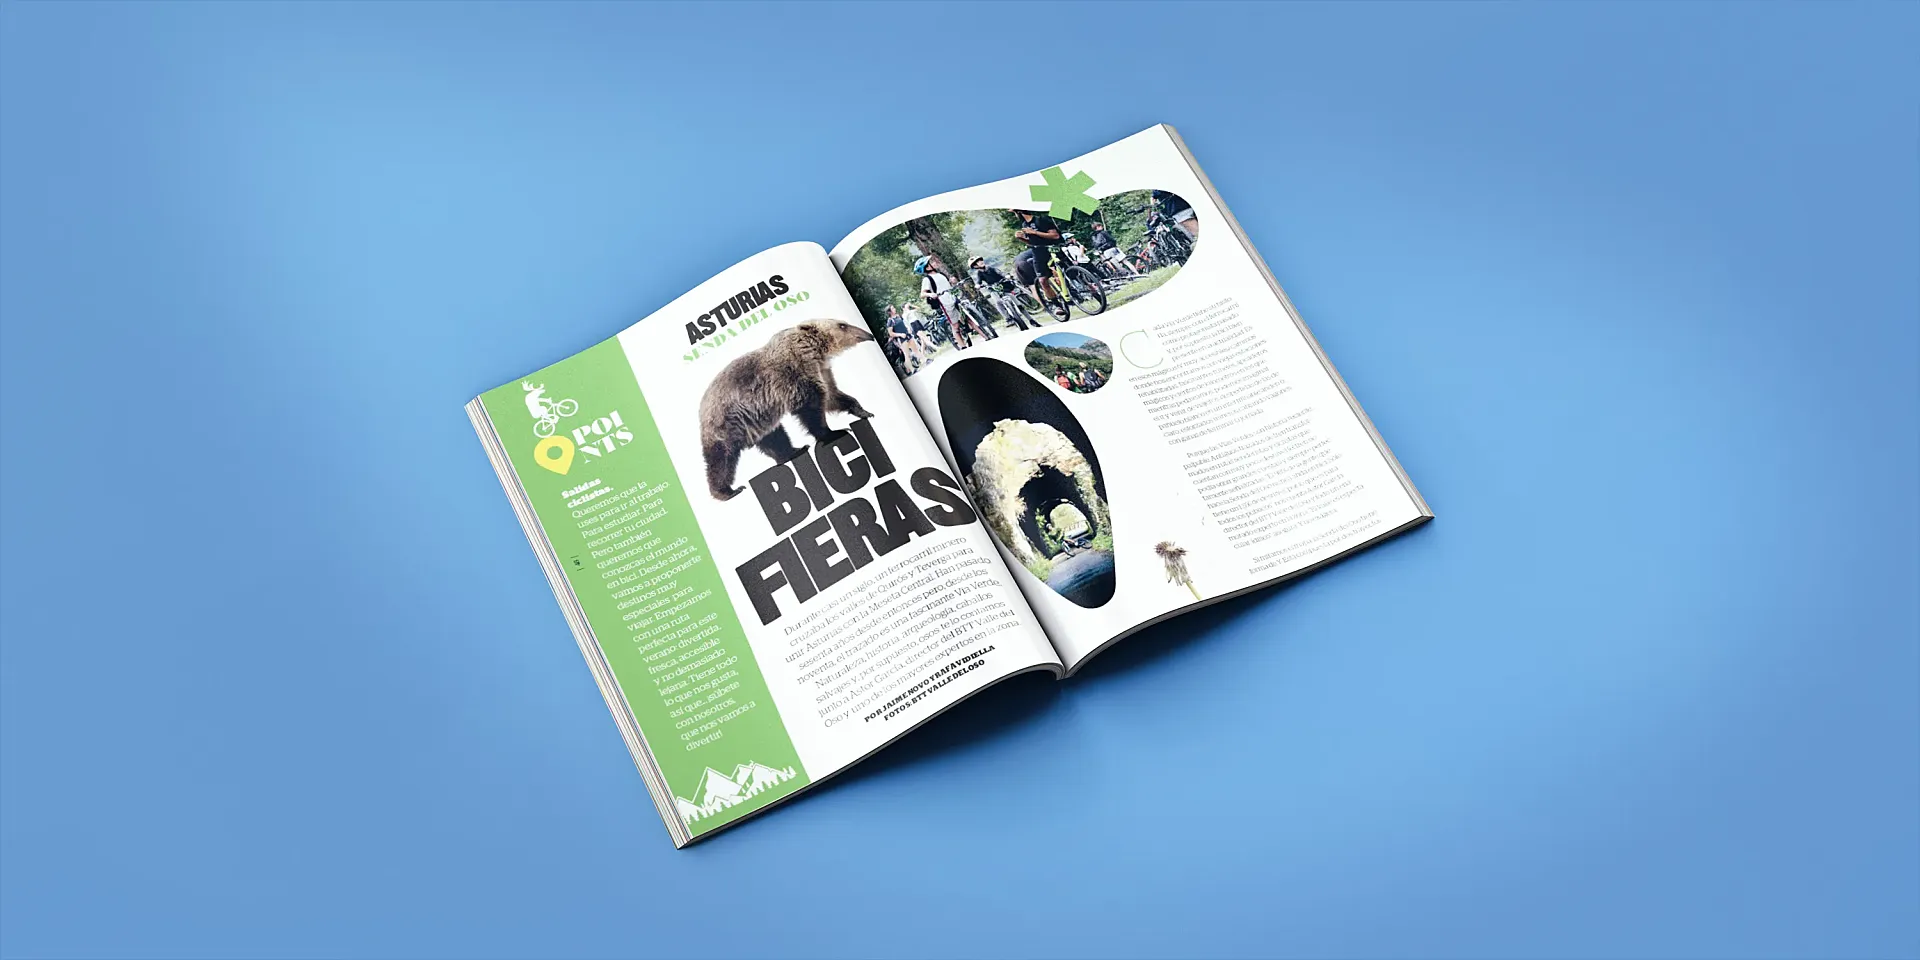 La Senda del Oso es protagonista en Ciclosfera #40, nuestra nueva revista de verano 2022.